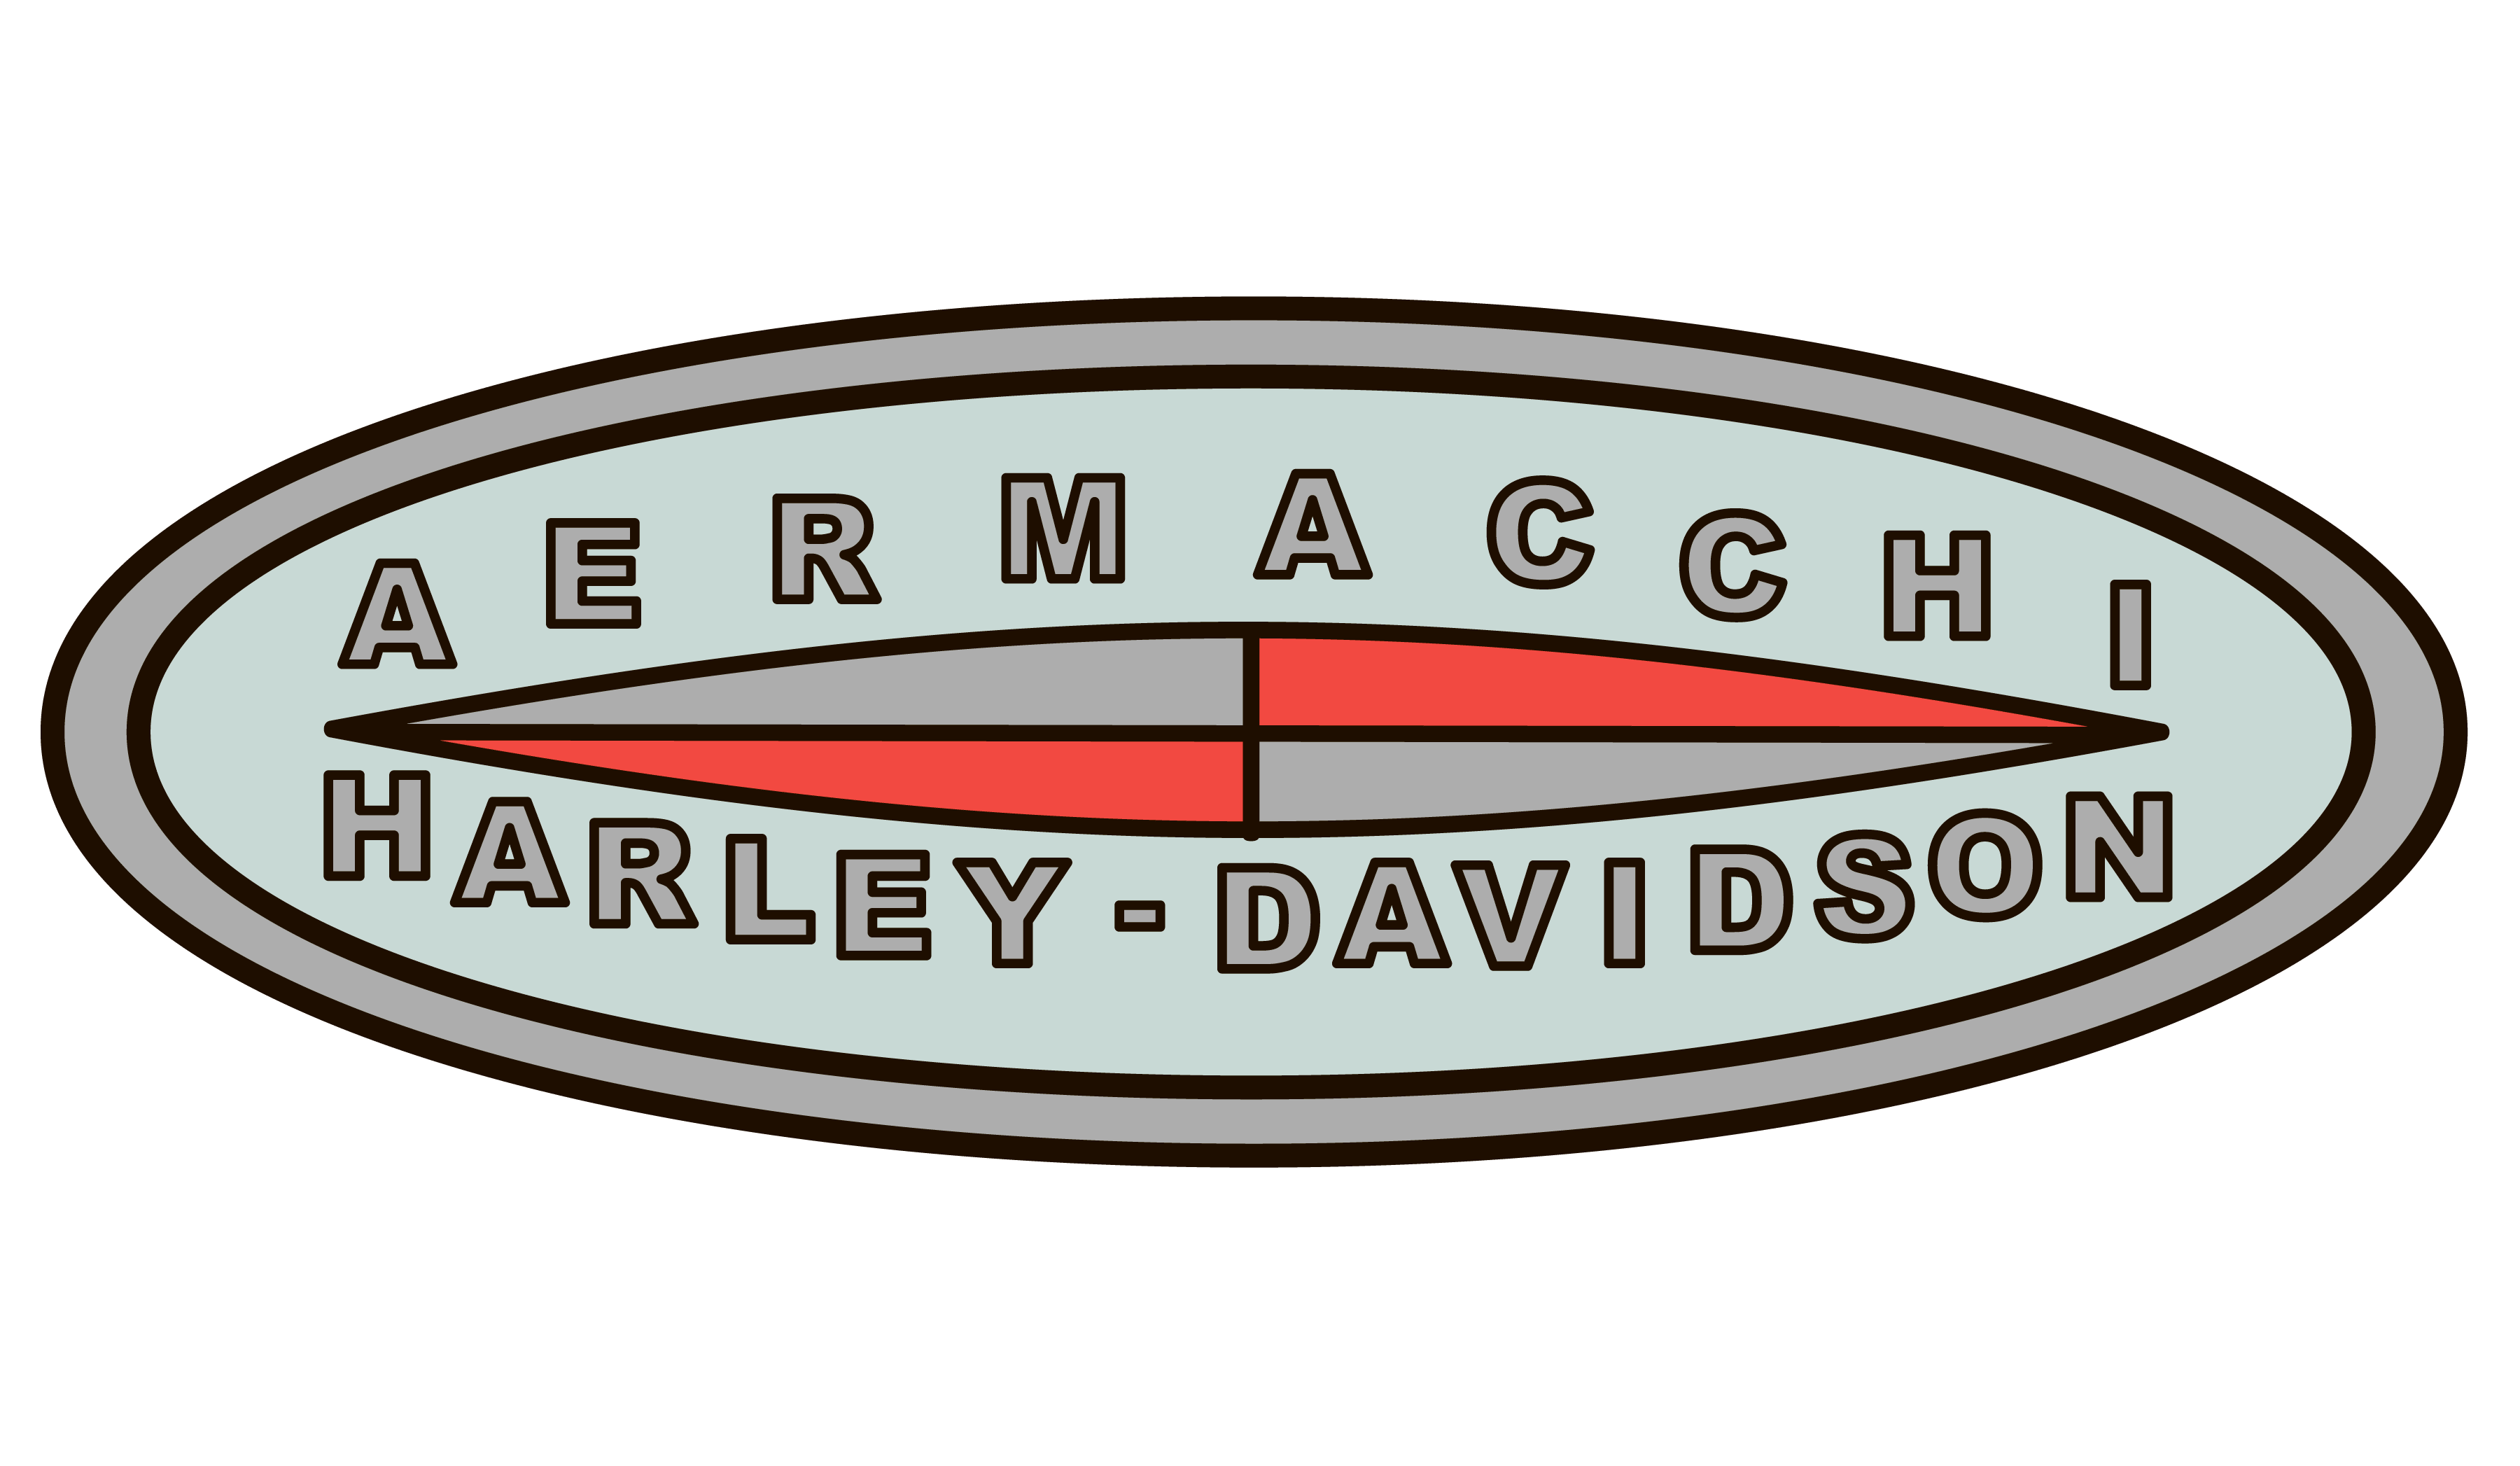 Aermacchi Motorcycle Logo